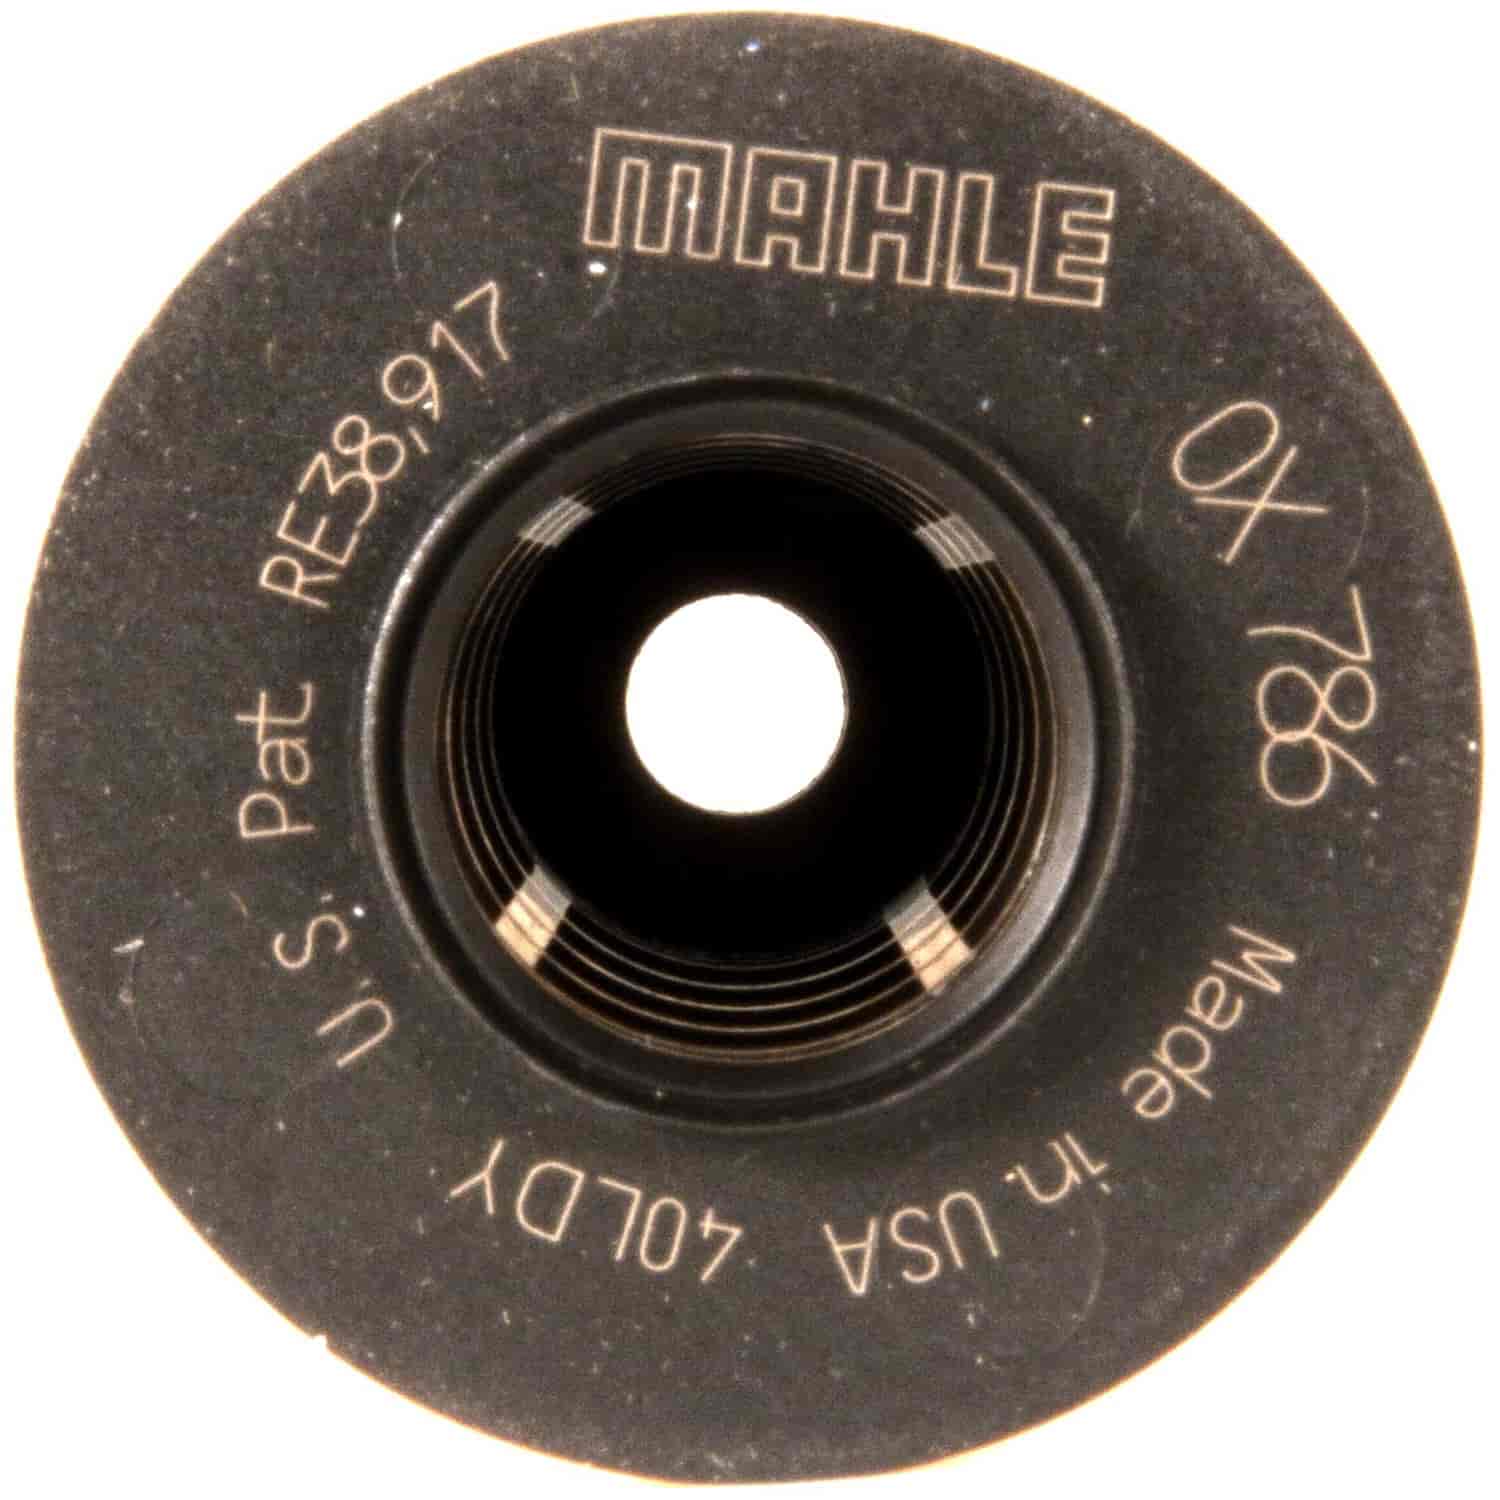 Mahle Oil Filter 2011-2013 Chrysler V6 3.6L